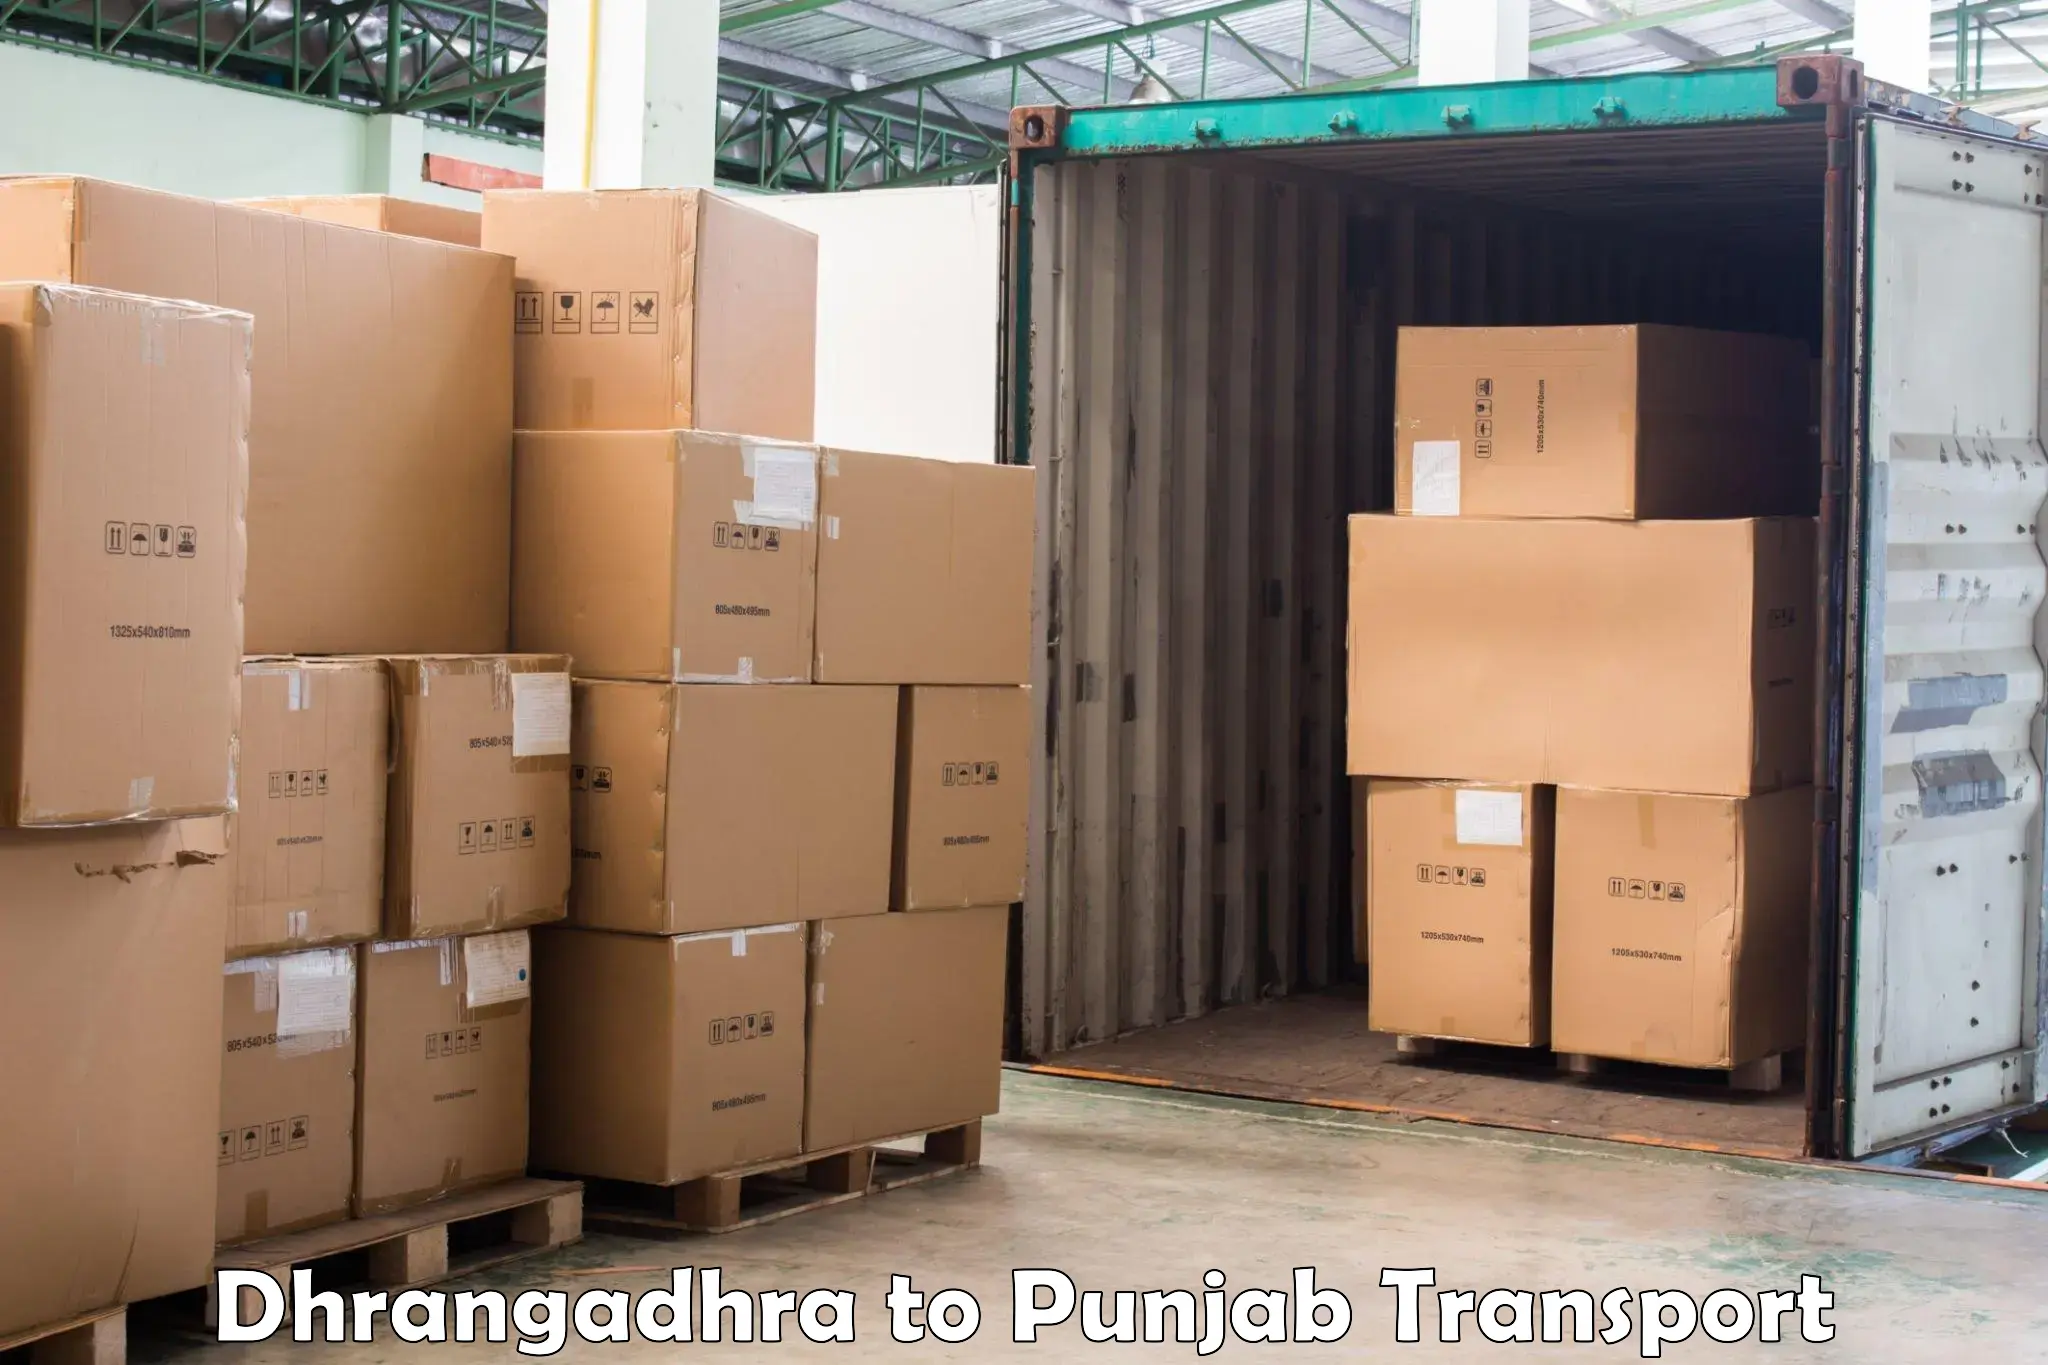 Land transport services in Dhrangadhra to Zirakpur